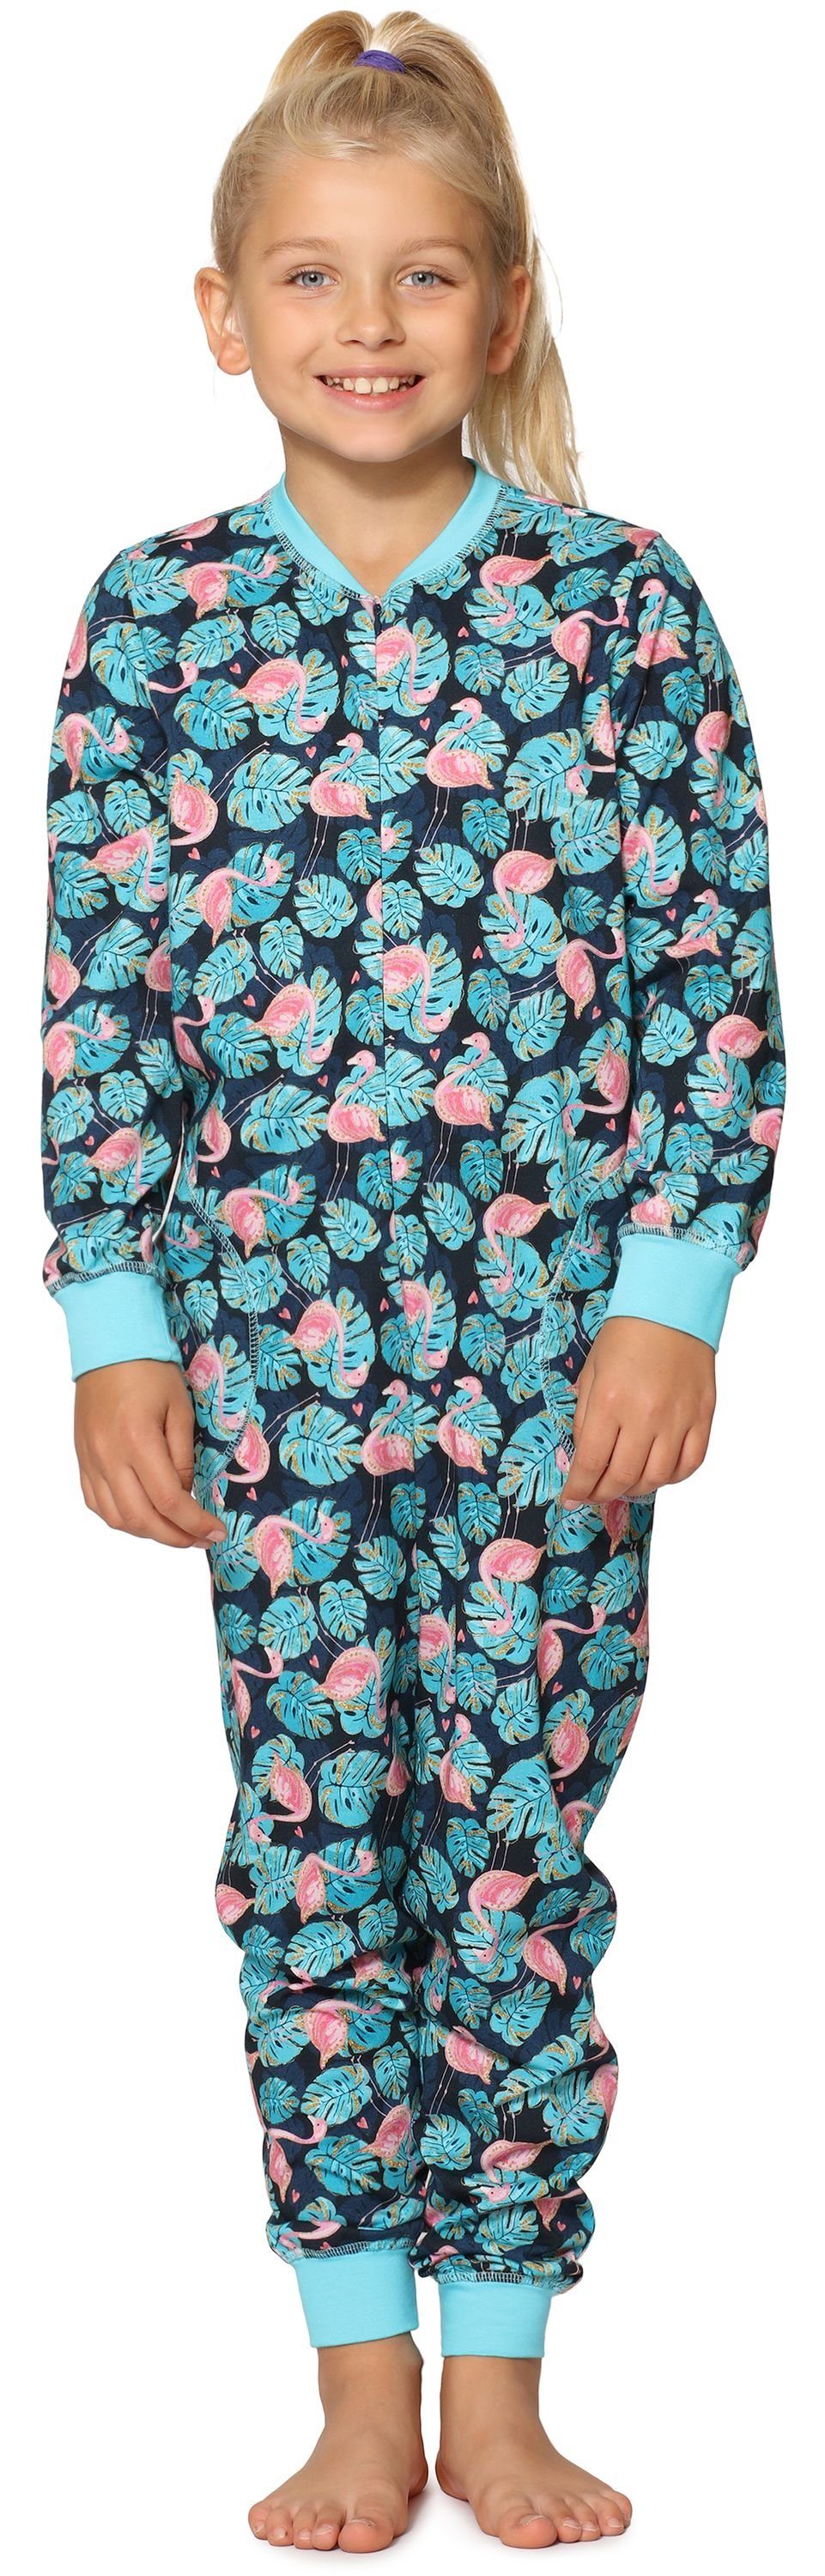 Merry Style Schlafanzug Mädchen Schlafanzug Jumpsuit MS10-186 Türkis Flamingos